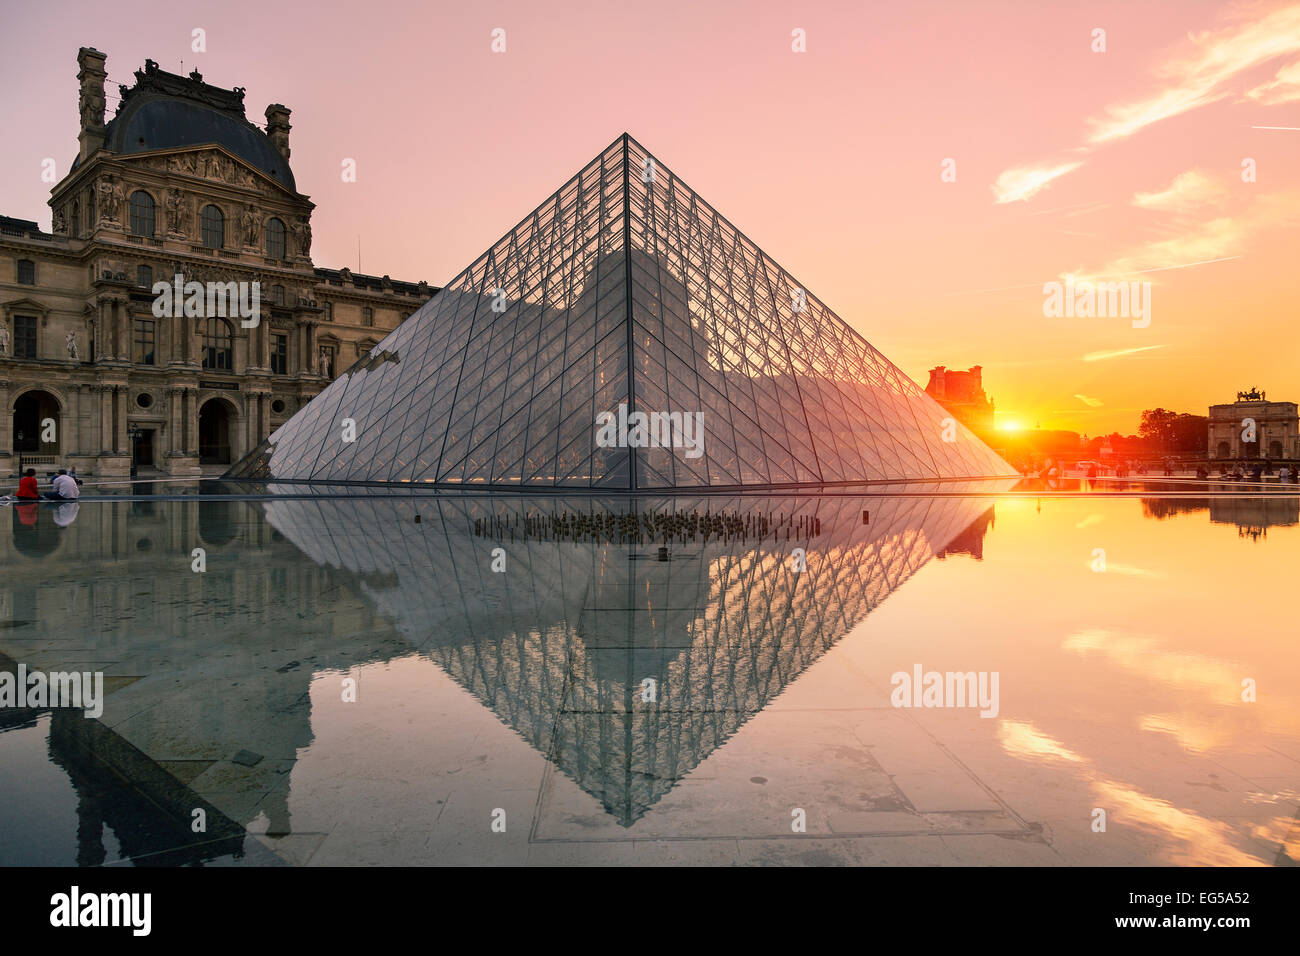 La pirámide del Louvre en París, al atardecer Foto de stock